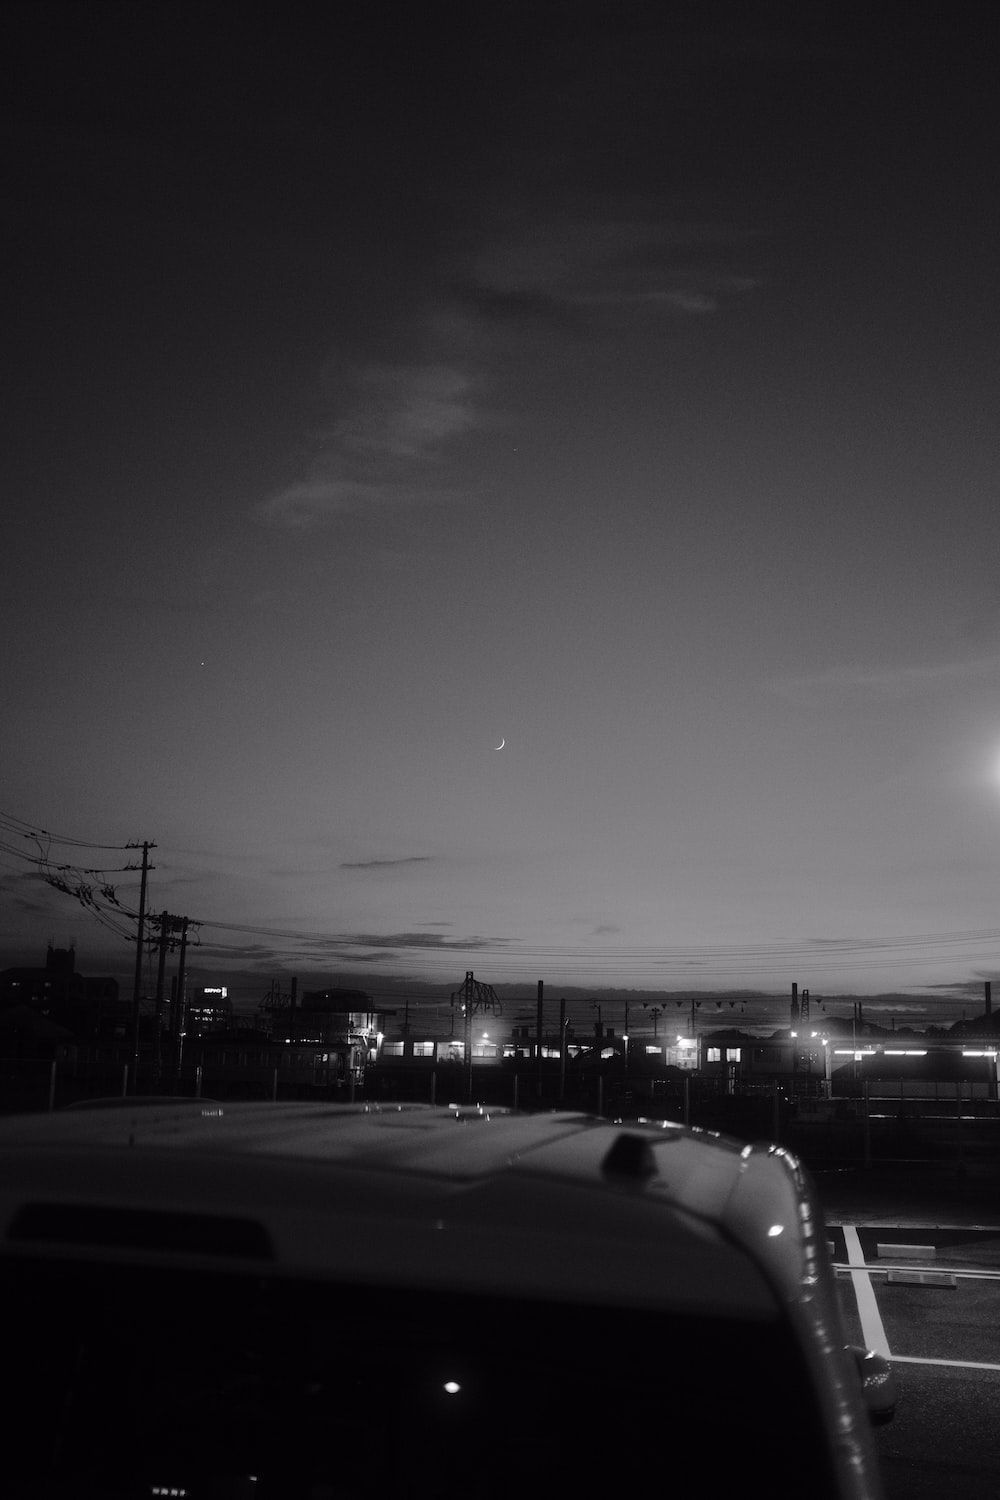  Grau Hintergrundbild 1000x1500. Foto Zum Thema Ein Schwarz Weiß Foto Einer Stadt Bei Nacht